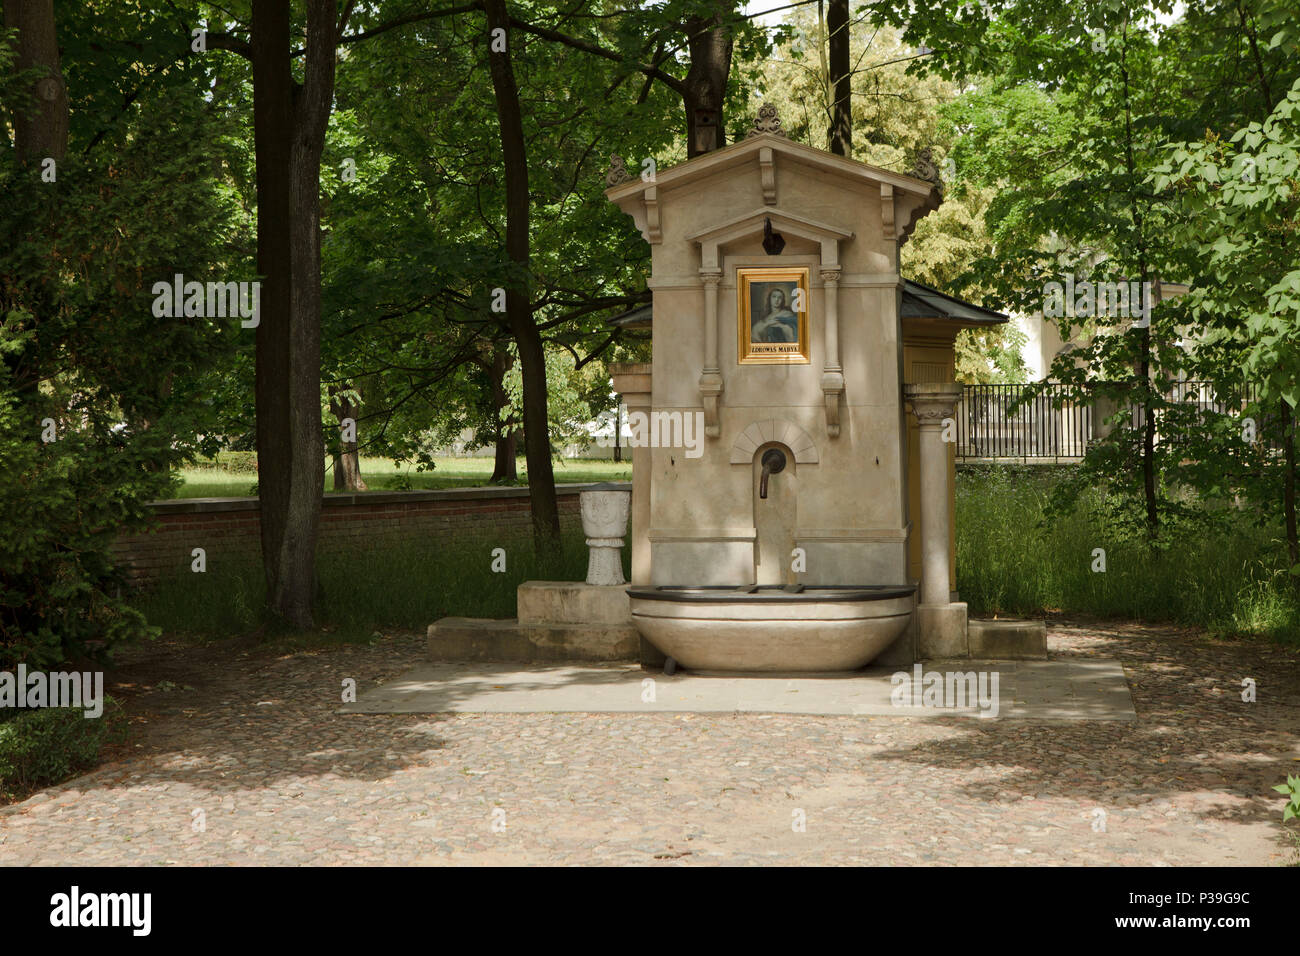 Petite fontaine avec st. Mary chappel dans les jardins royaux du palais de Wilanów, Varsovie, Pologne Banque D'Images